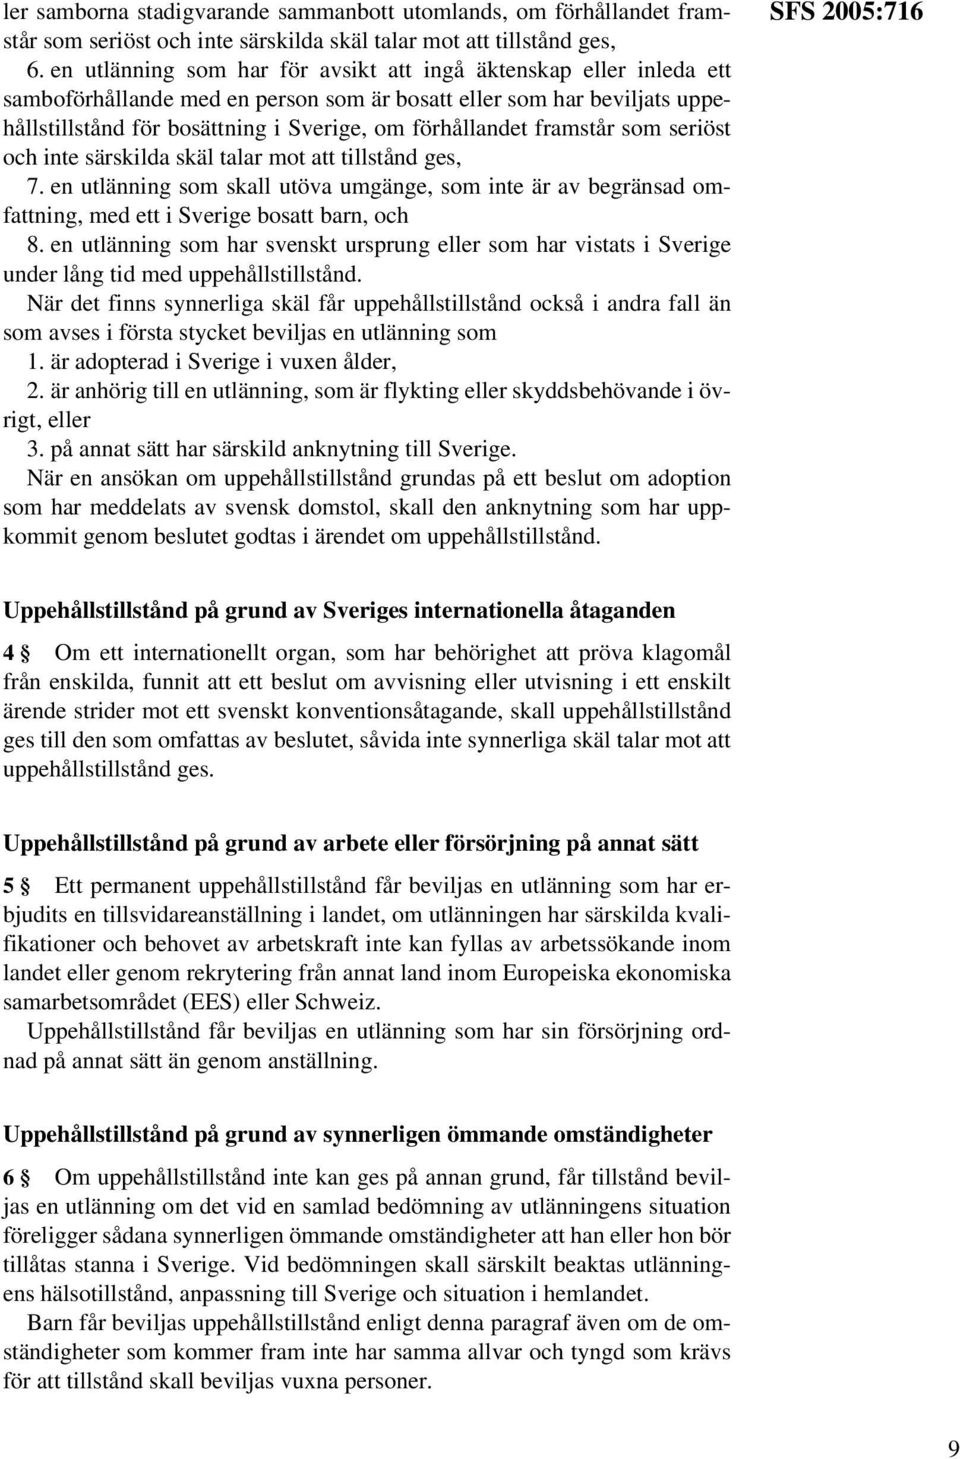 framstår som seriöst och inte särskilda skäl talar mot att tillstånd ges, 7. en utlänning som skall utöva umgänge, som inte är av begränsad omfattning, med ett i Sverige bosatt barn, och 8.